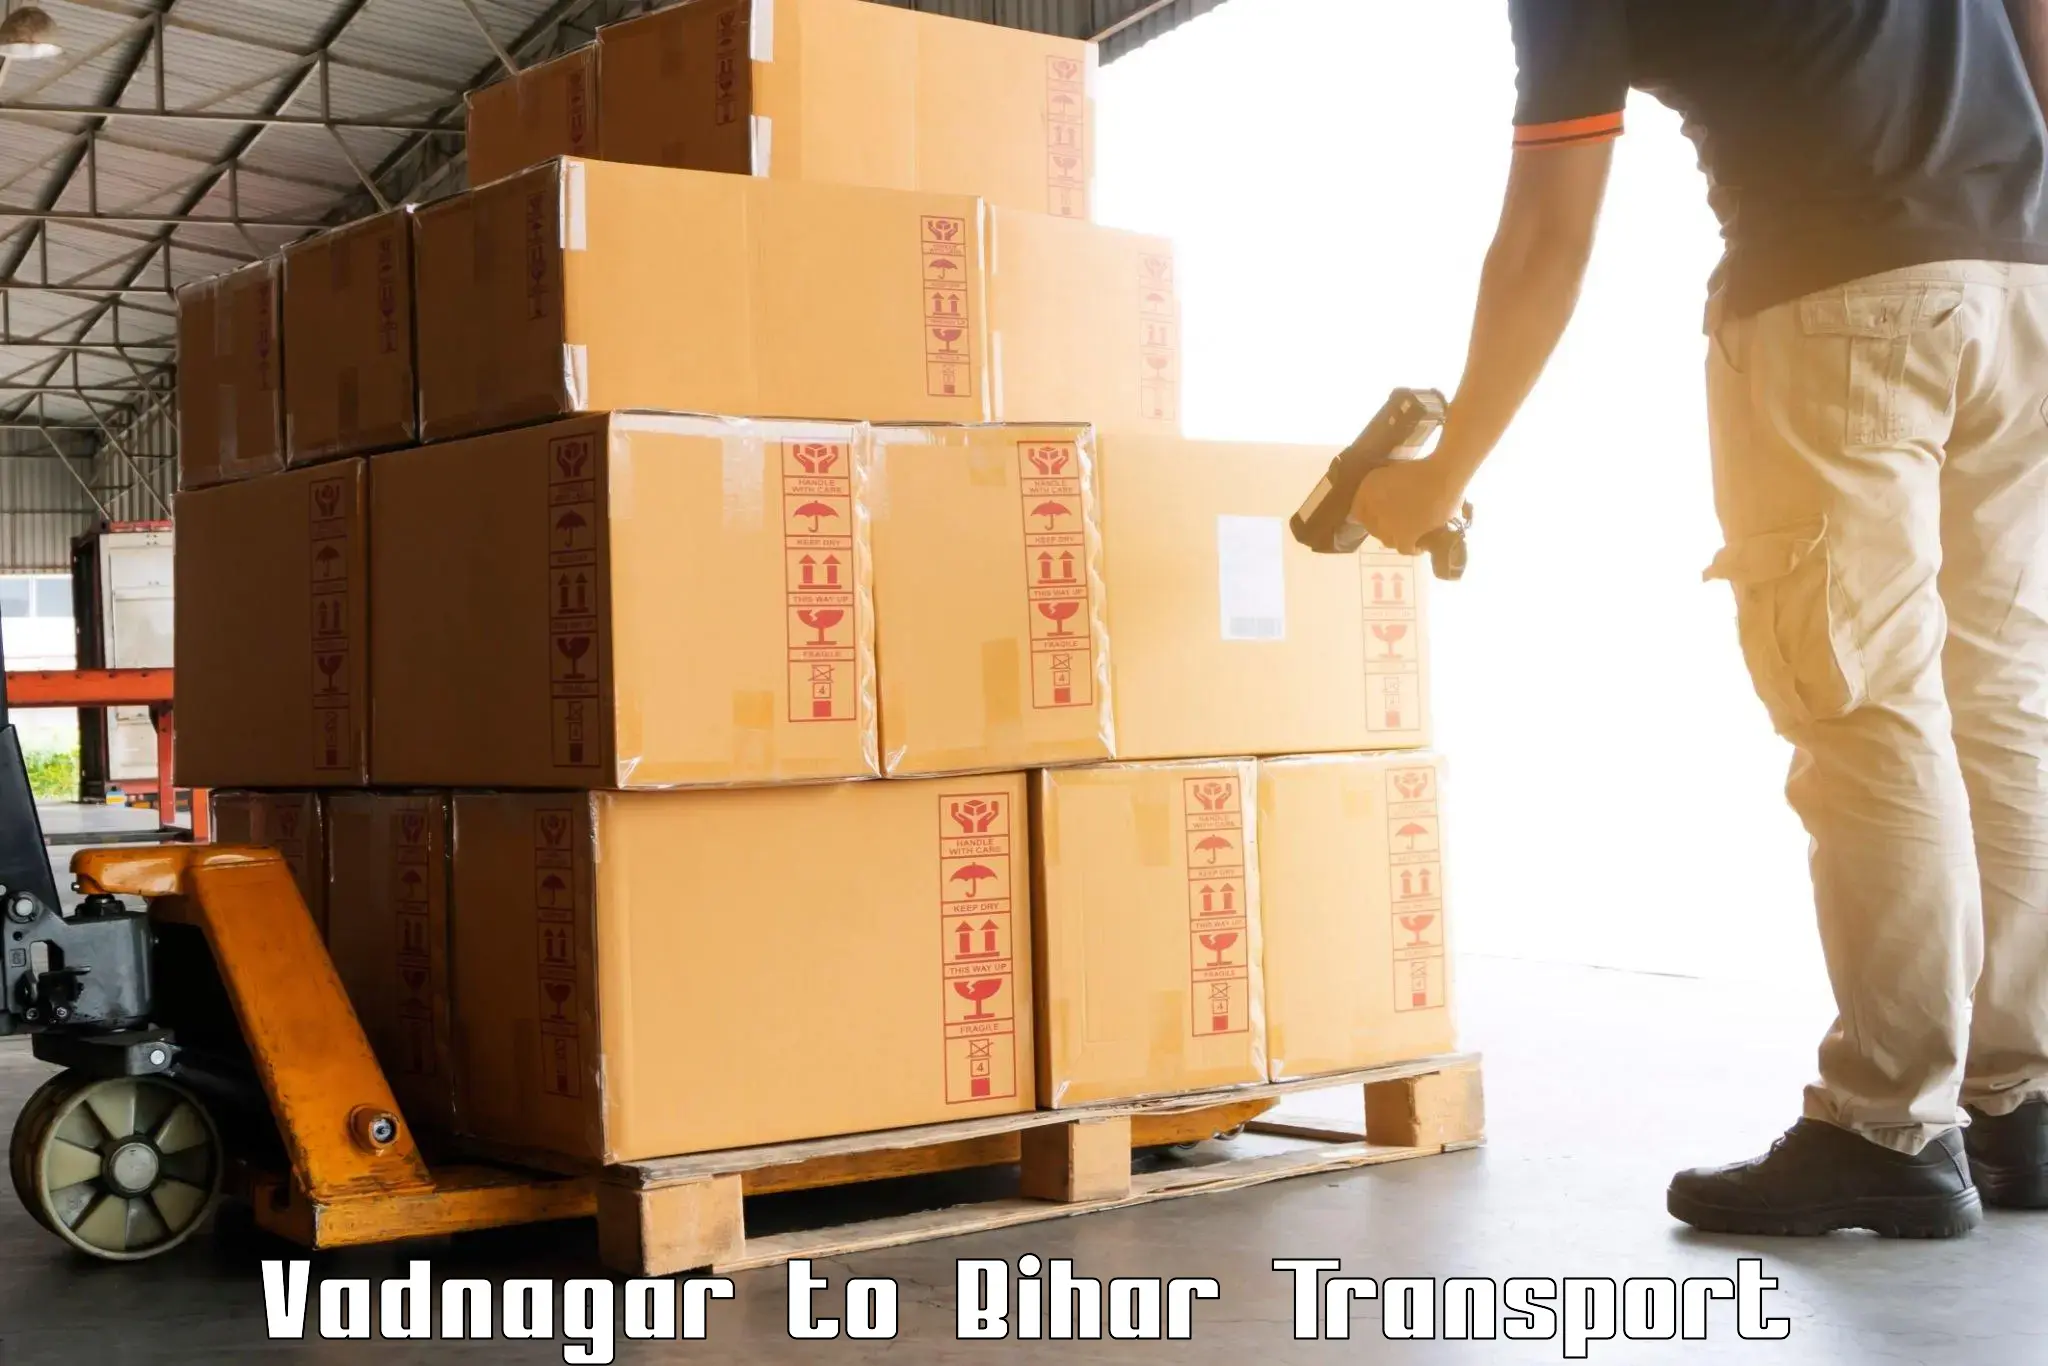 Daily transport service Vadnagar to Bihar